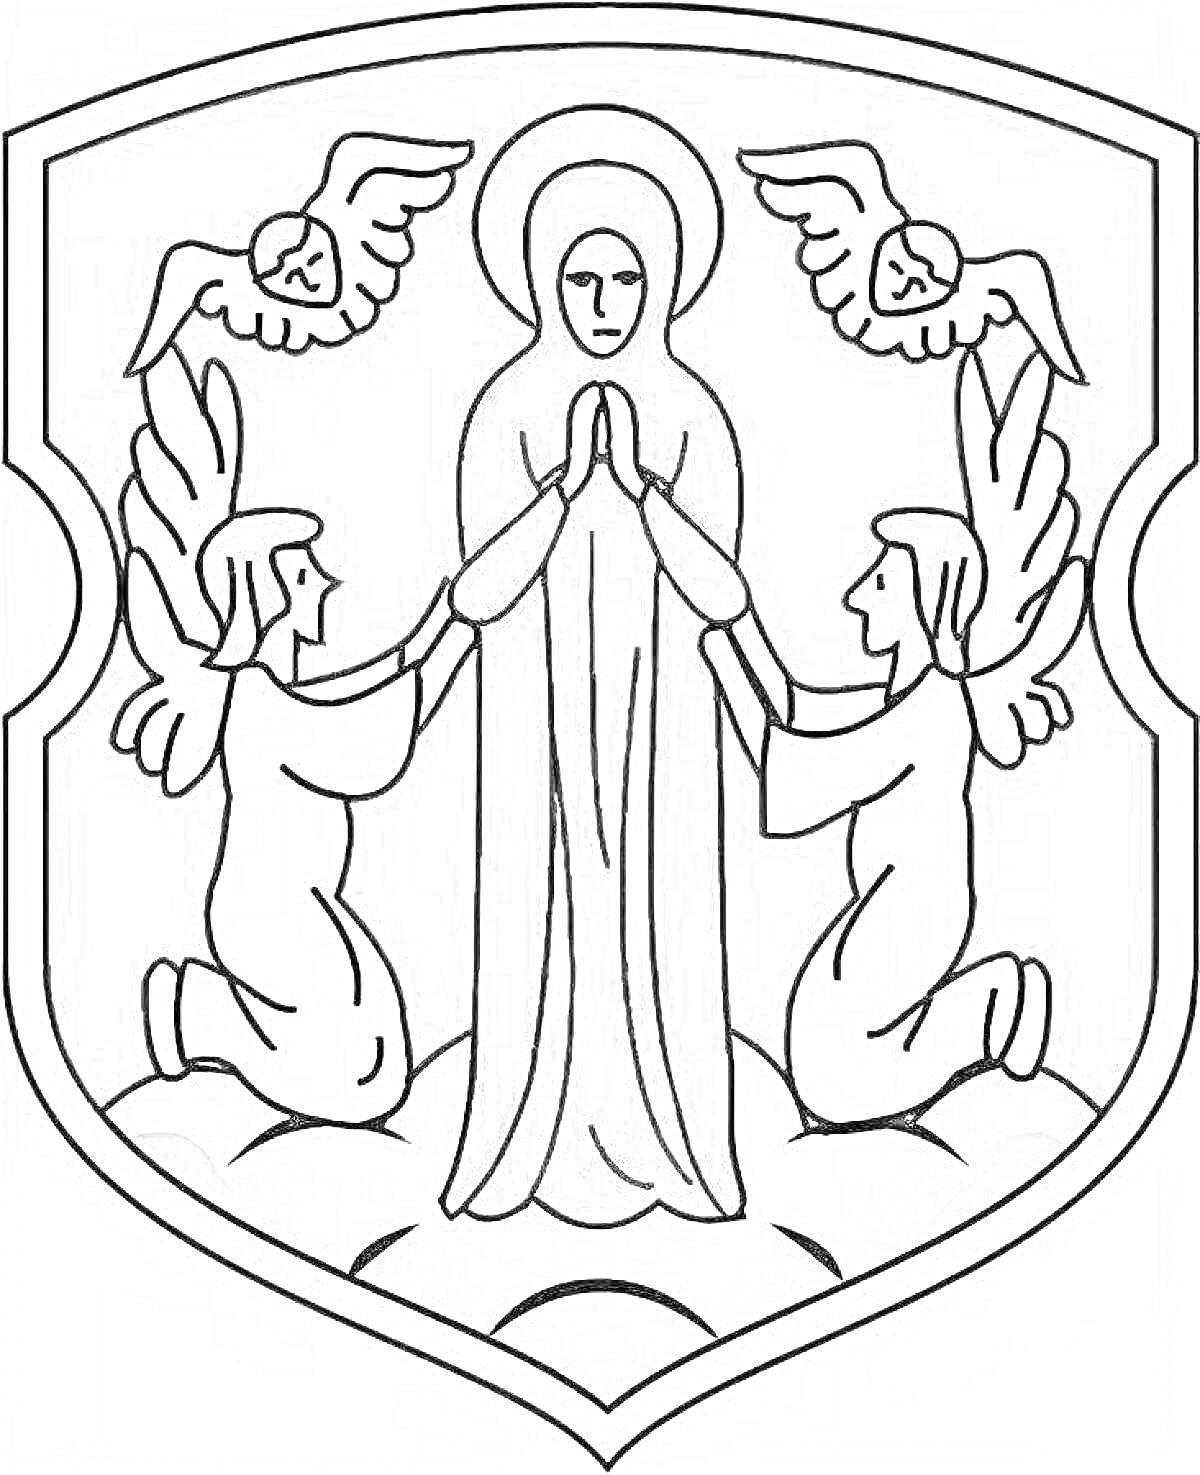 Раскраска Герб Минска: женщины с нимбом молящейся позе, два ангела преклоняются на коленях и два ангела летают сверху